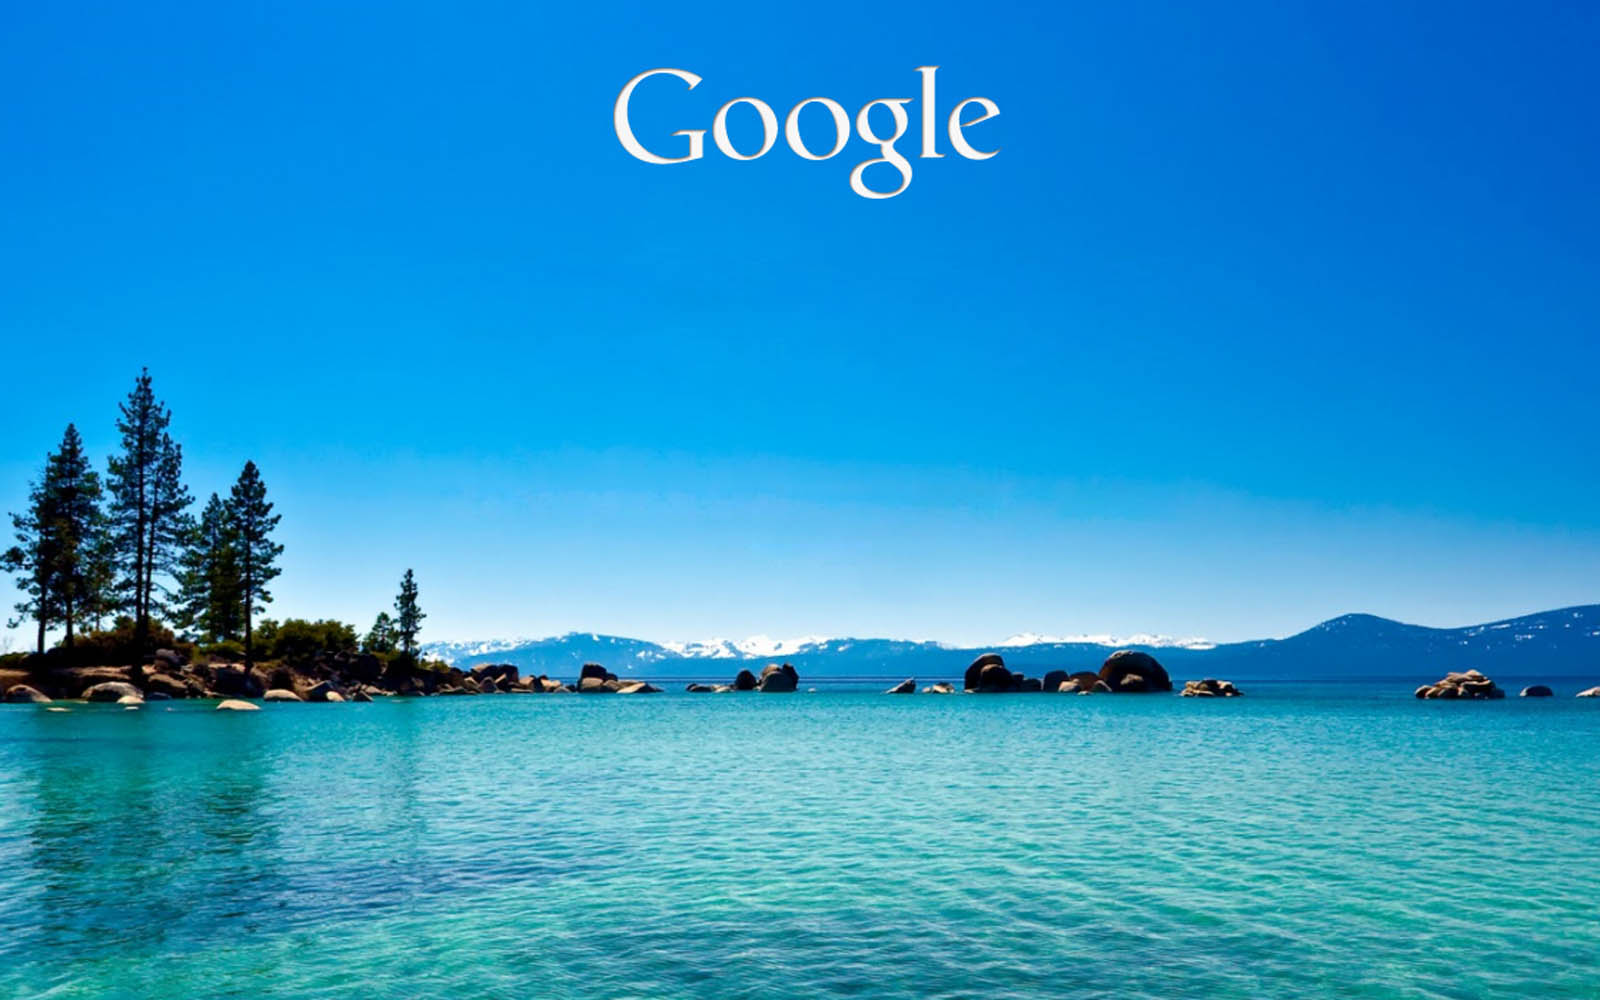 Google Wallpaper Backgrounds - WallpaperSafari